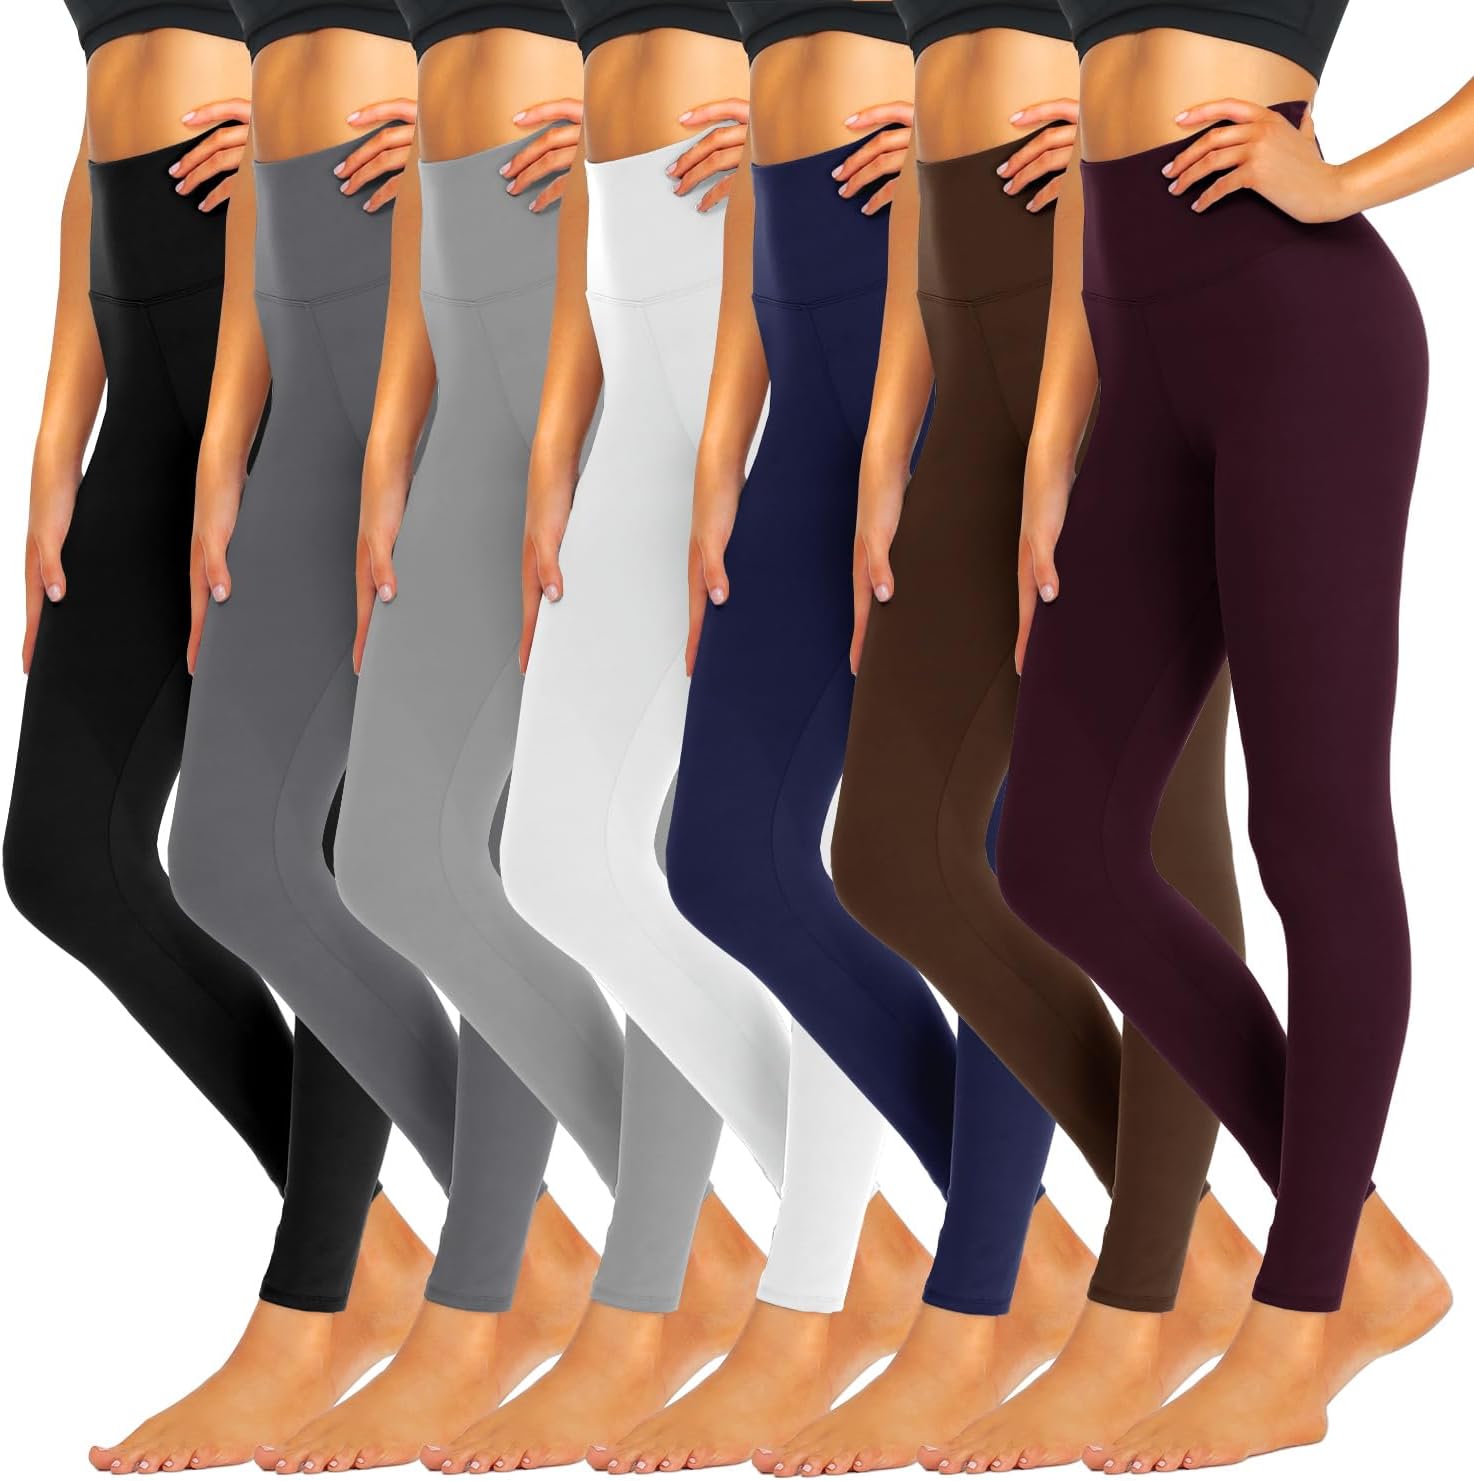 iceROSE 7 Pack Leggings for Women, High Waisted Soft Fleece Lined Leggings Black Yoga Pants for Workout Running Maternity